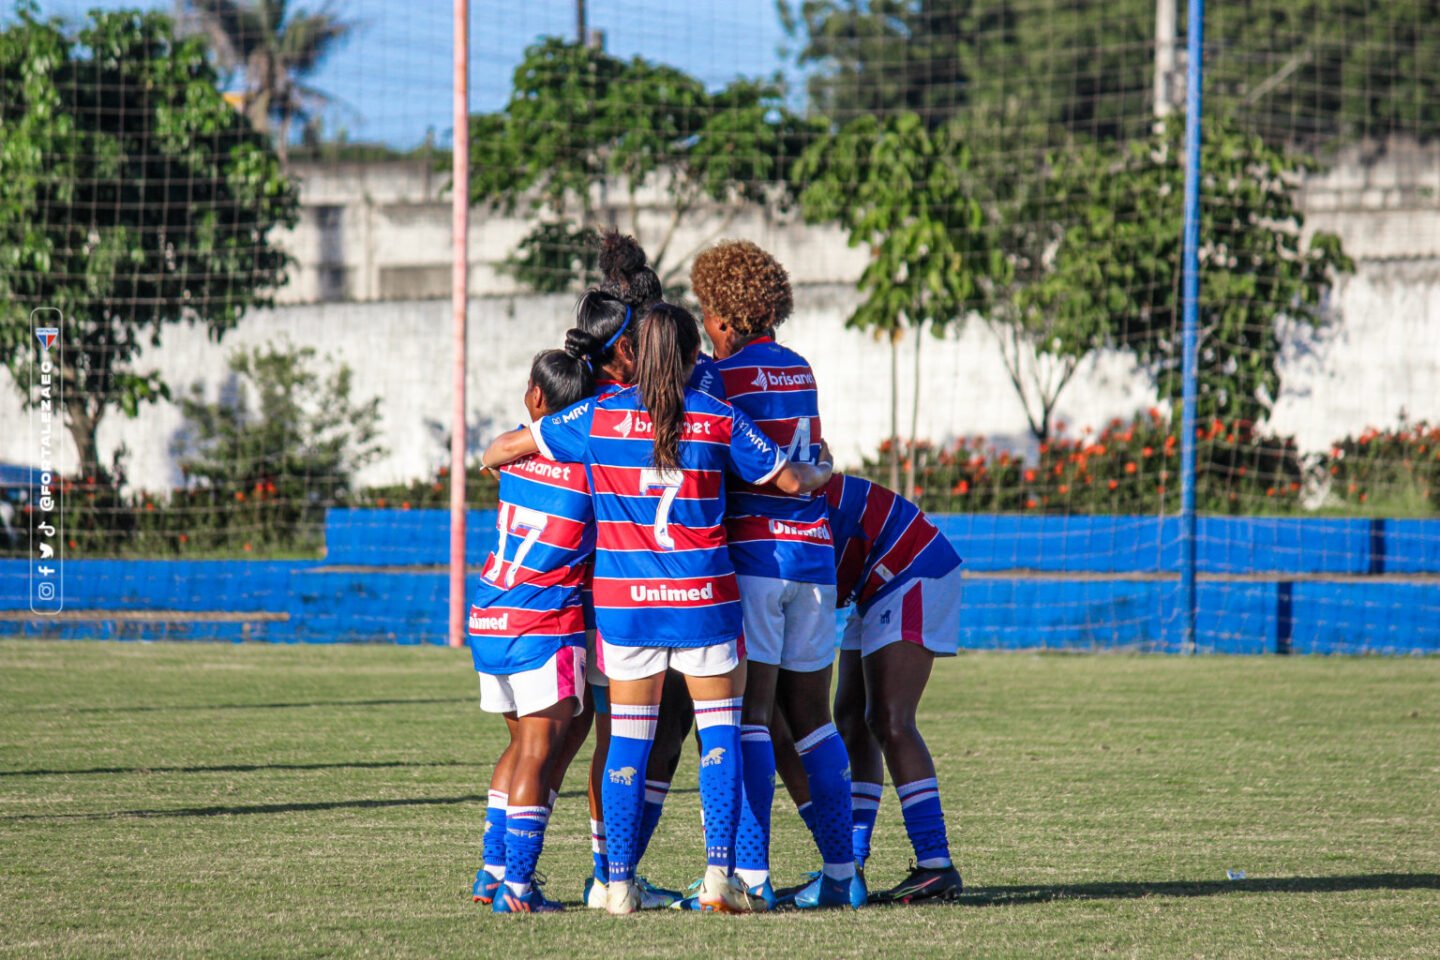 Brasileiro Feminino A2: O que você precisa saber sobre as quartas de final?  - Planeta Futebol Feminino